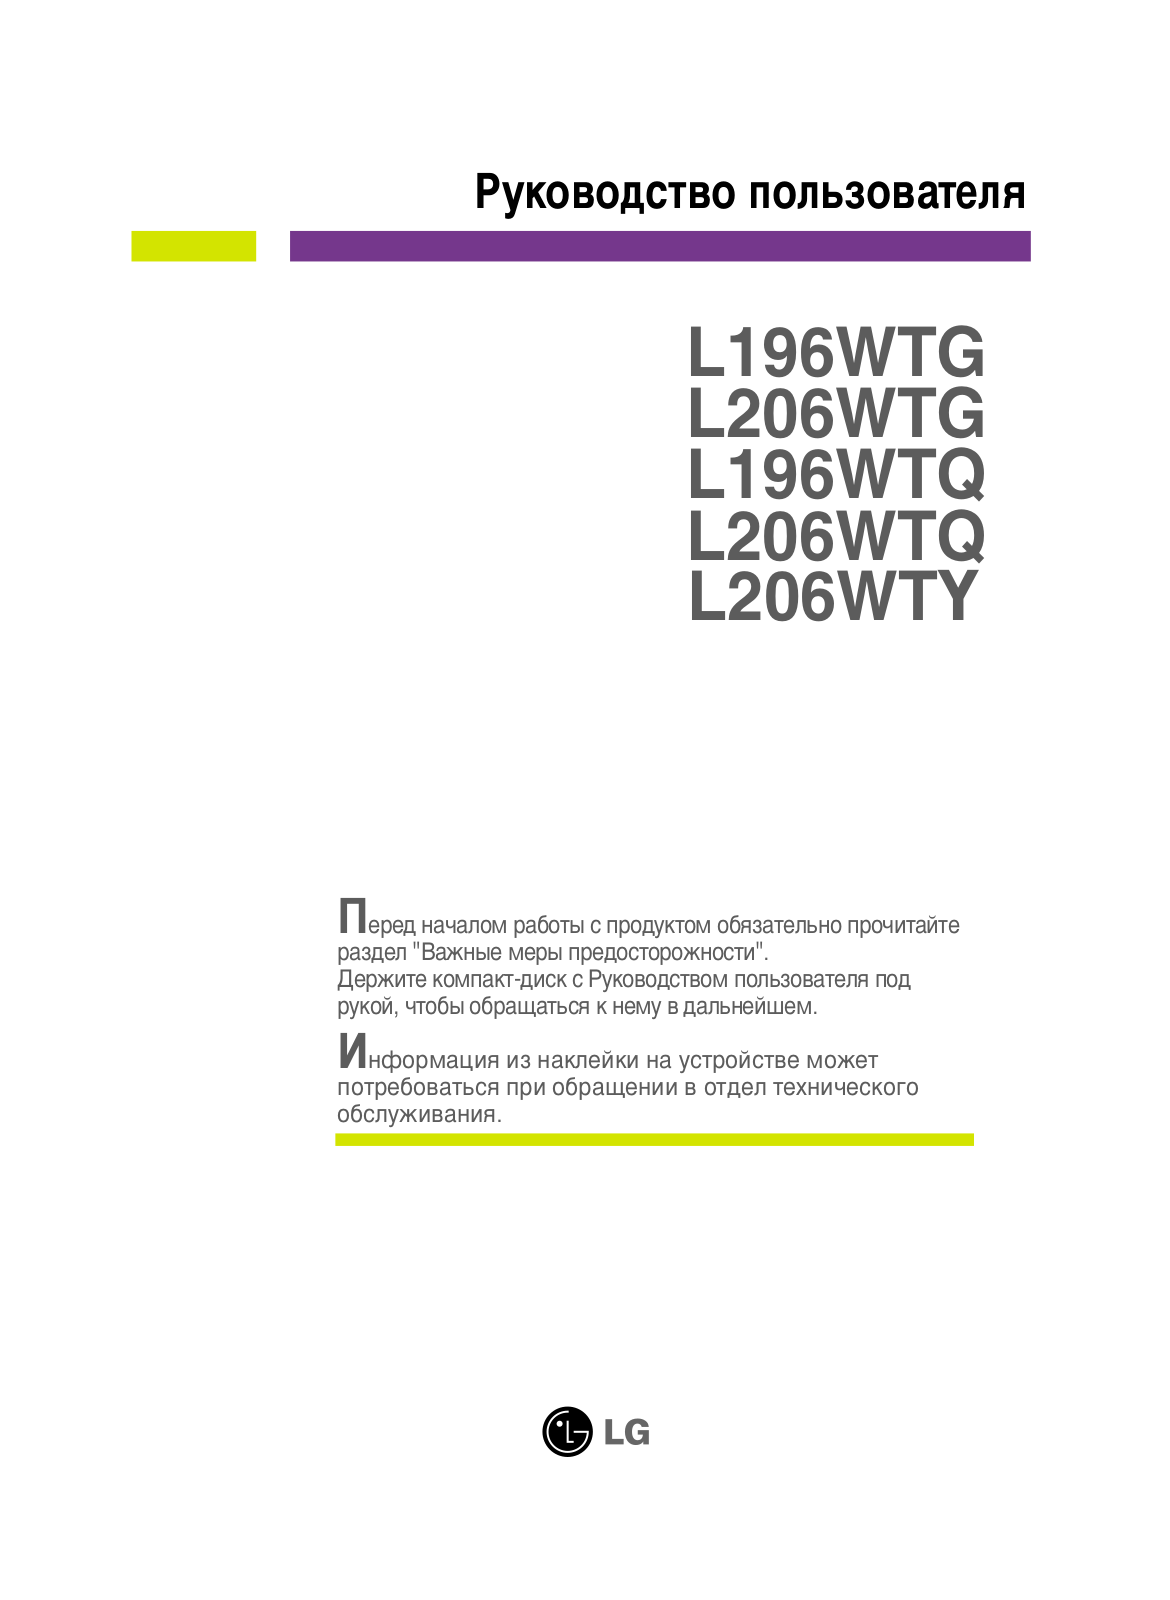 LG Flatron L196WTQ User Manual